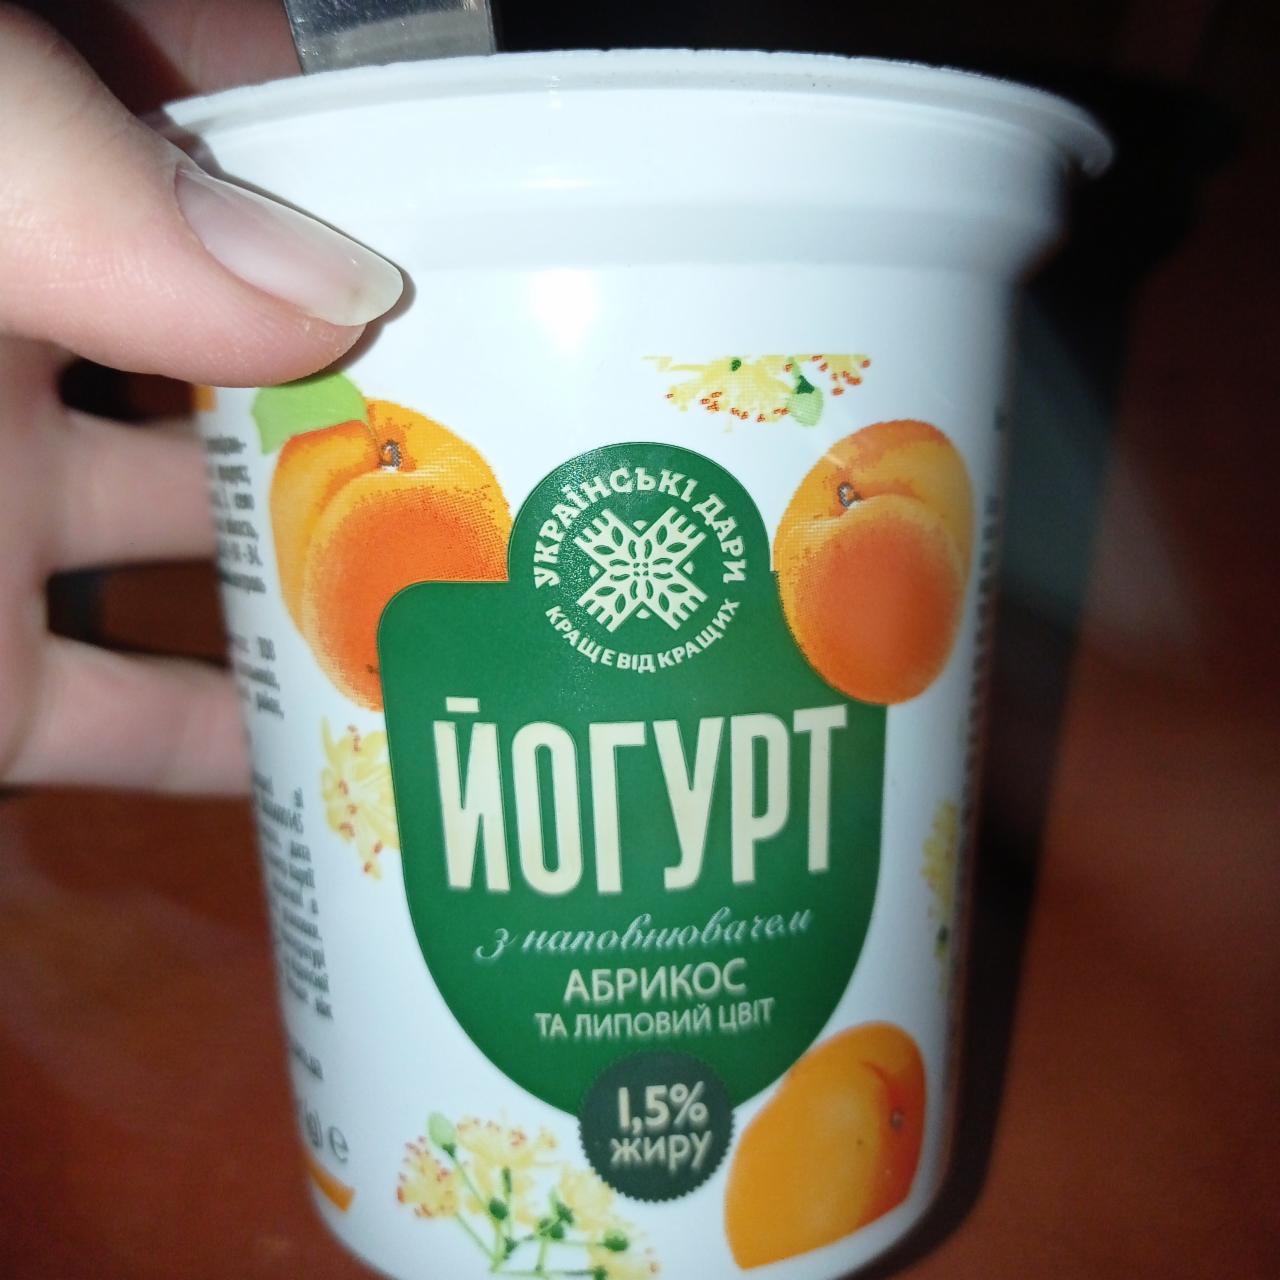 Фото - Йогурт с наполнителем абрикос и липовый цвет Українські дари